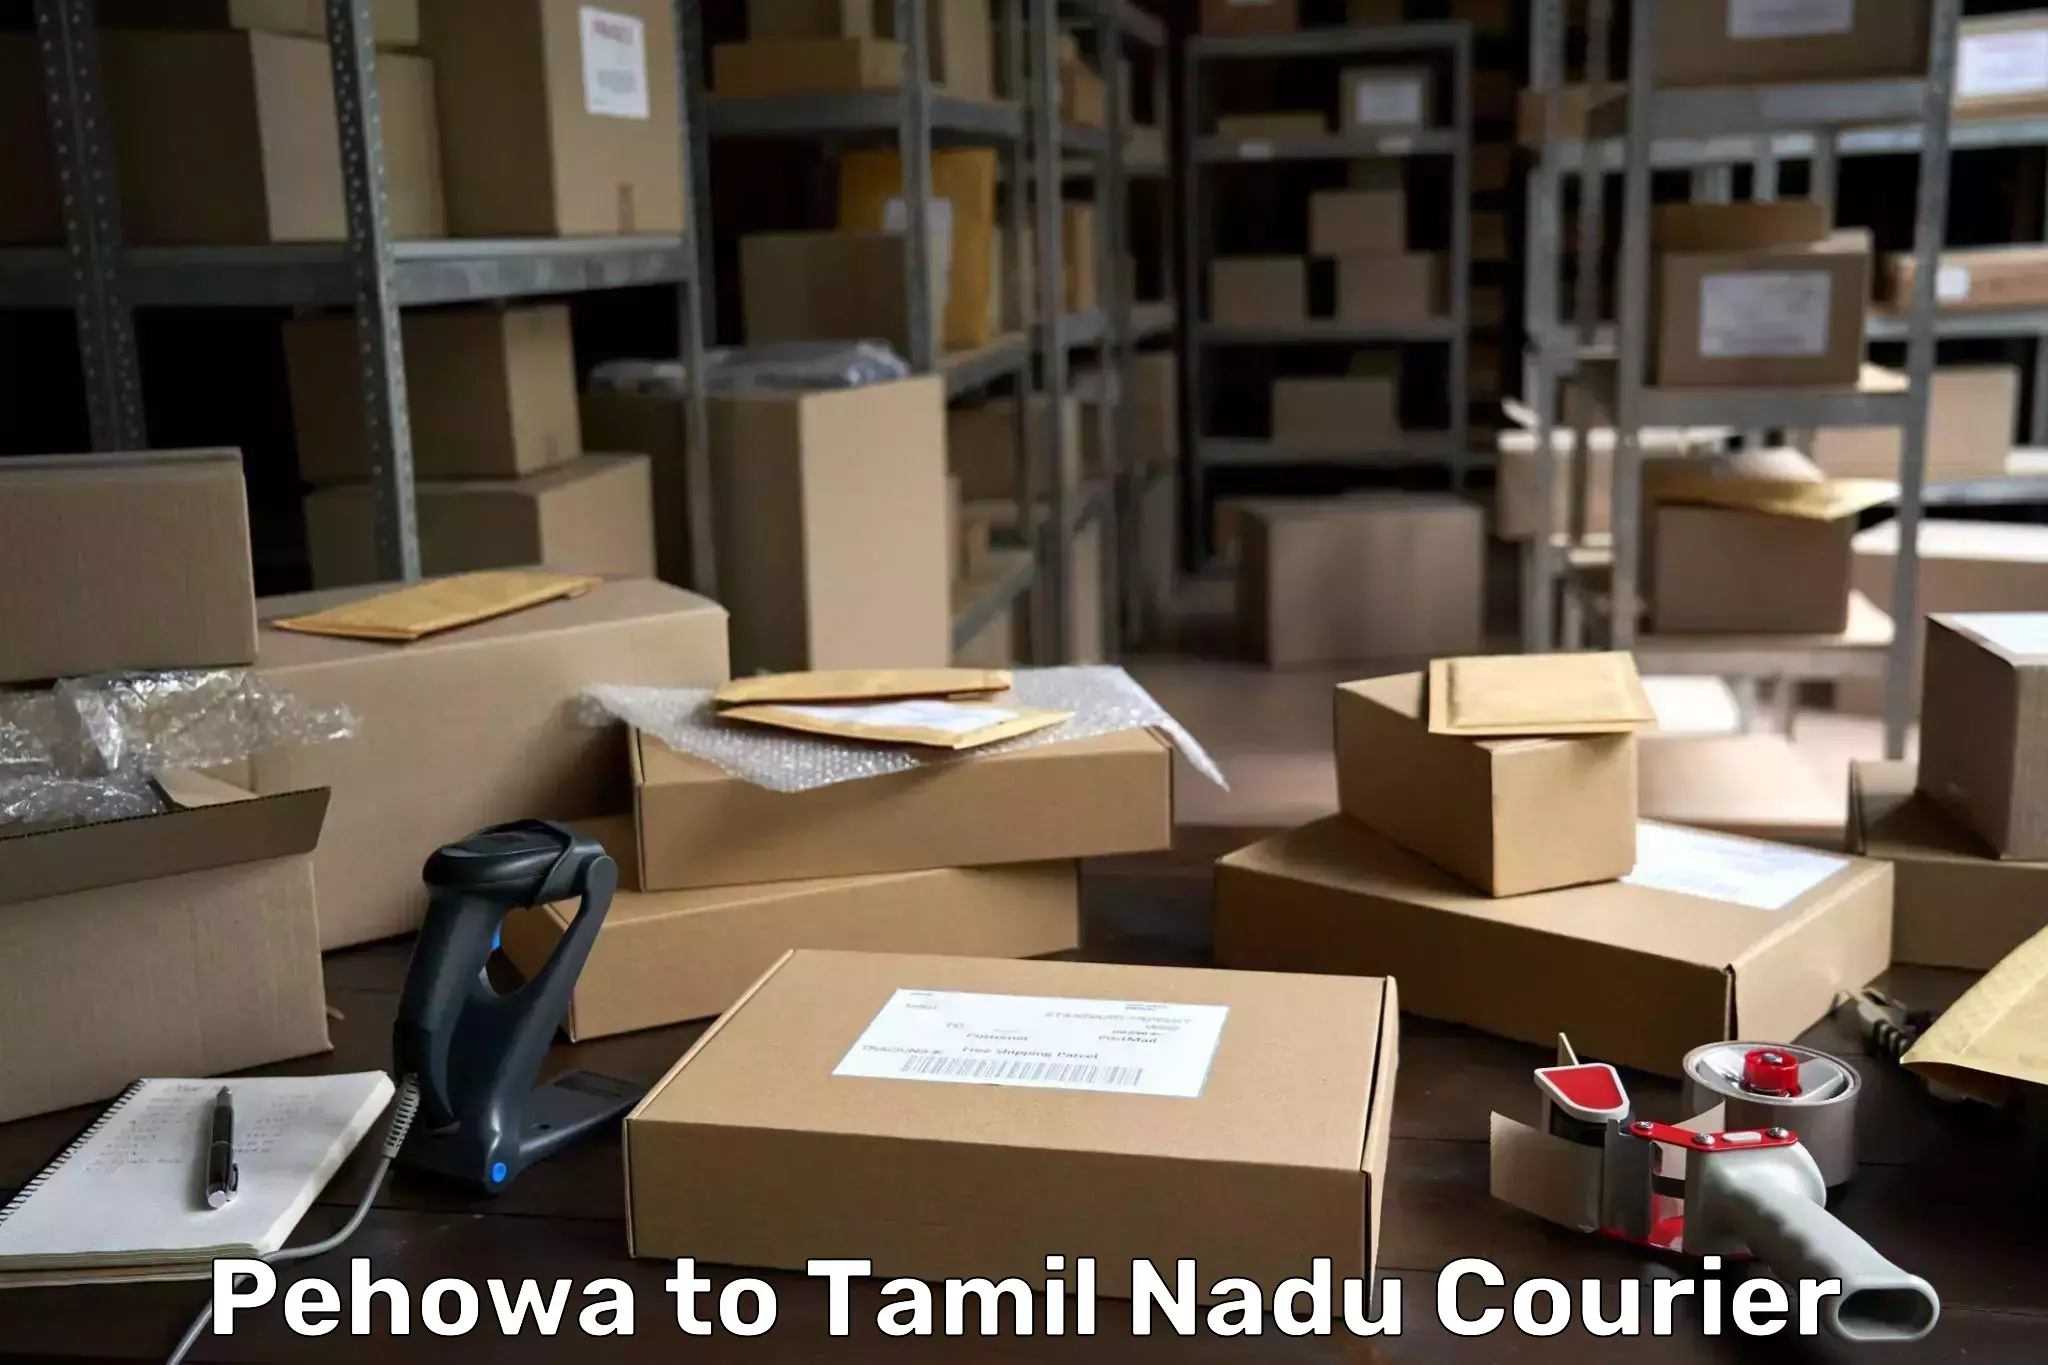 Efficient order fulfillment Pehowa to Tamil Nadu